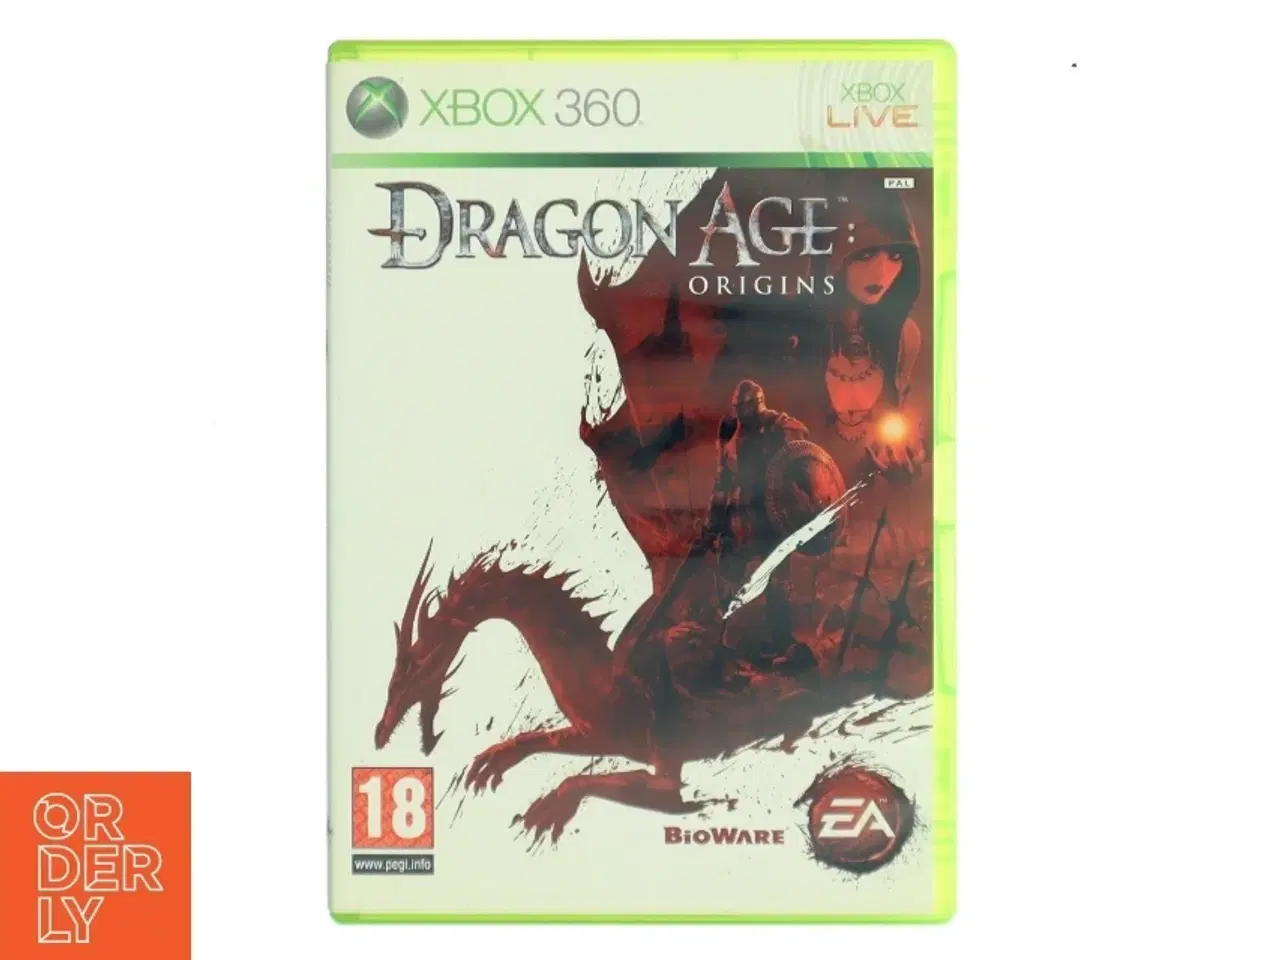 Billede 1 - Dragon Age: Origins Xbox 360 spil fra EA